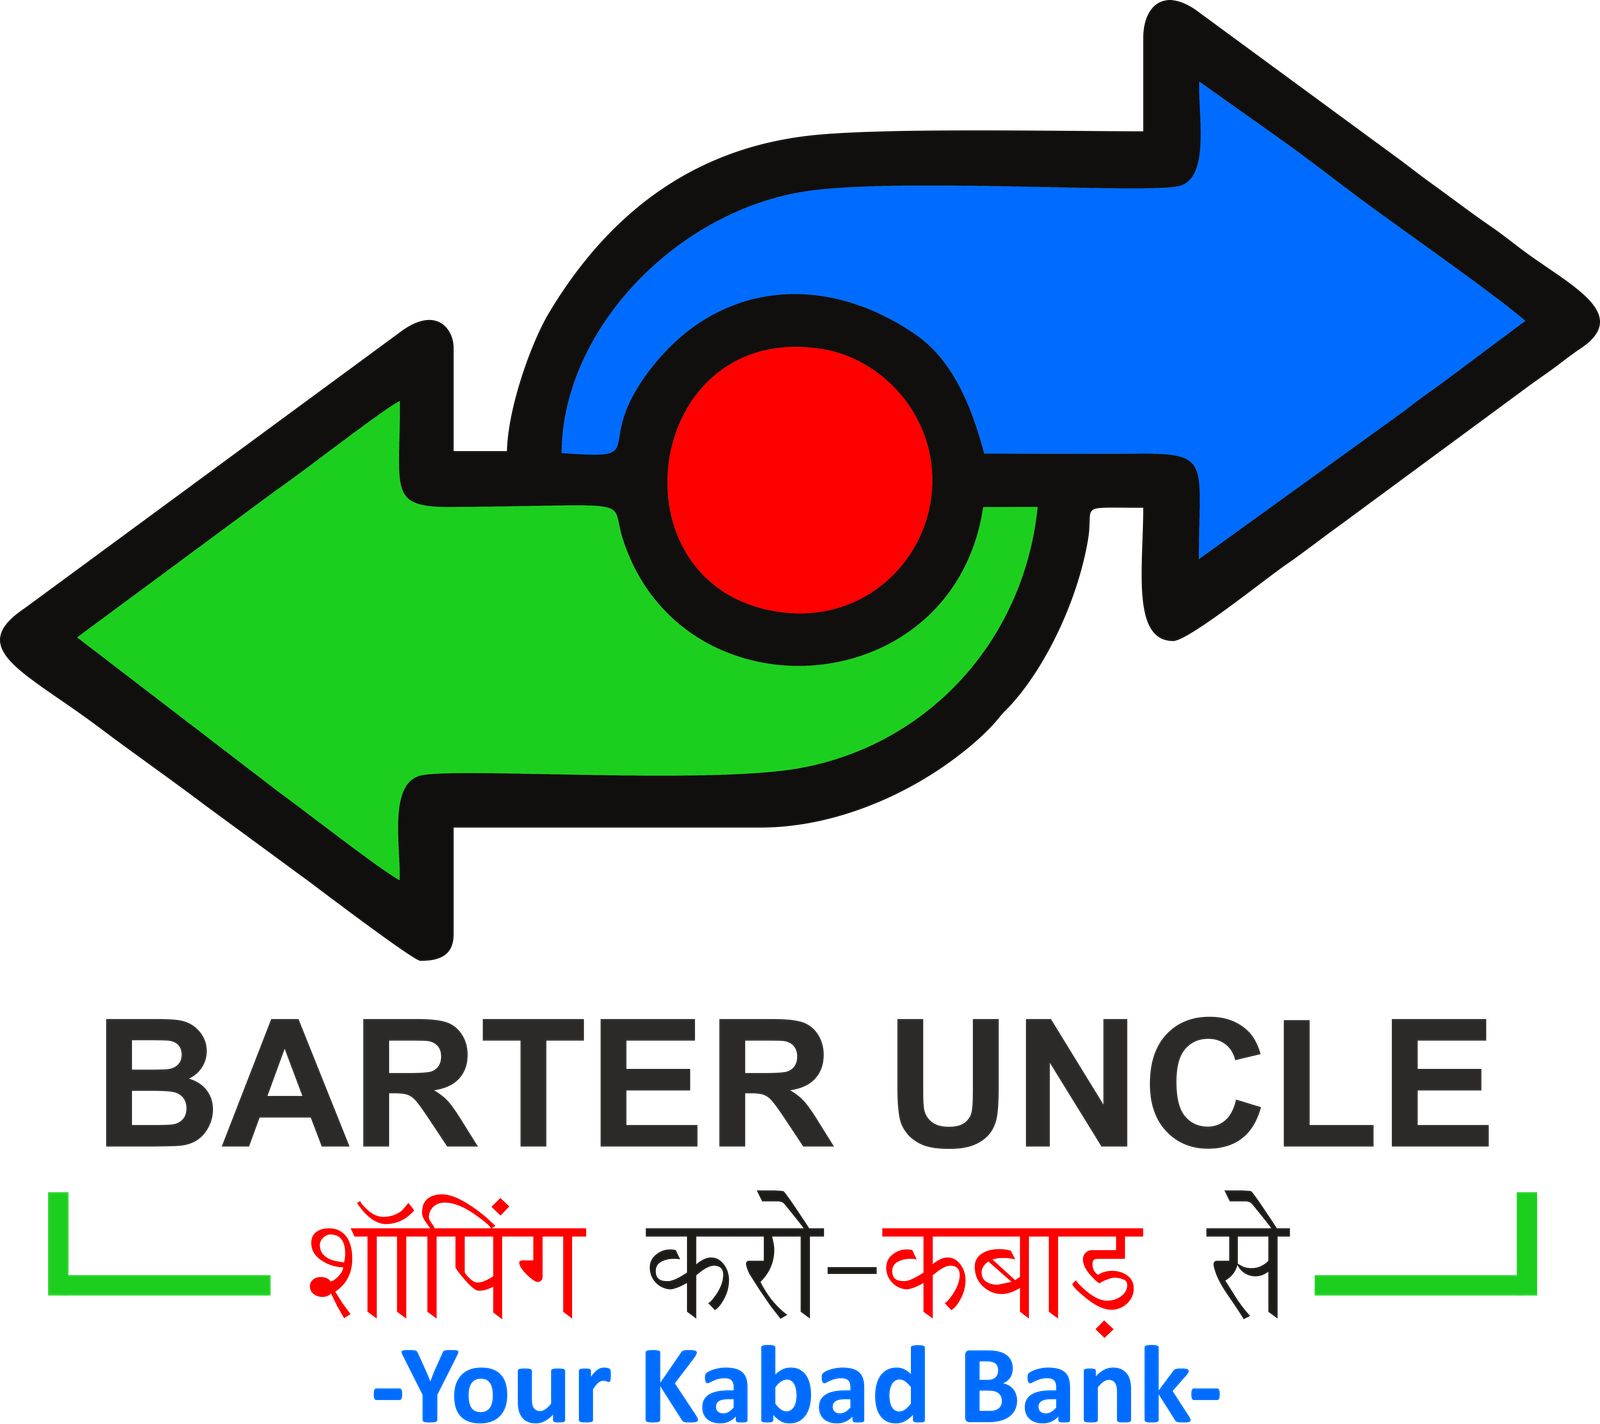 barter uncle logo 000